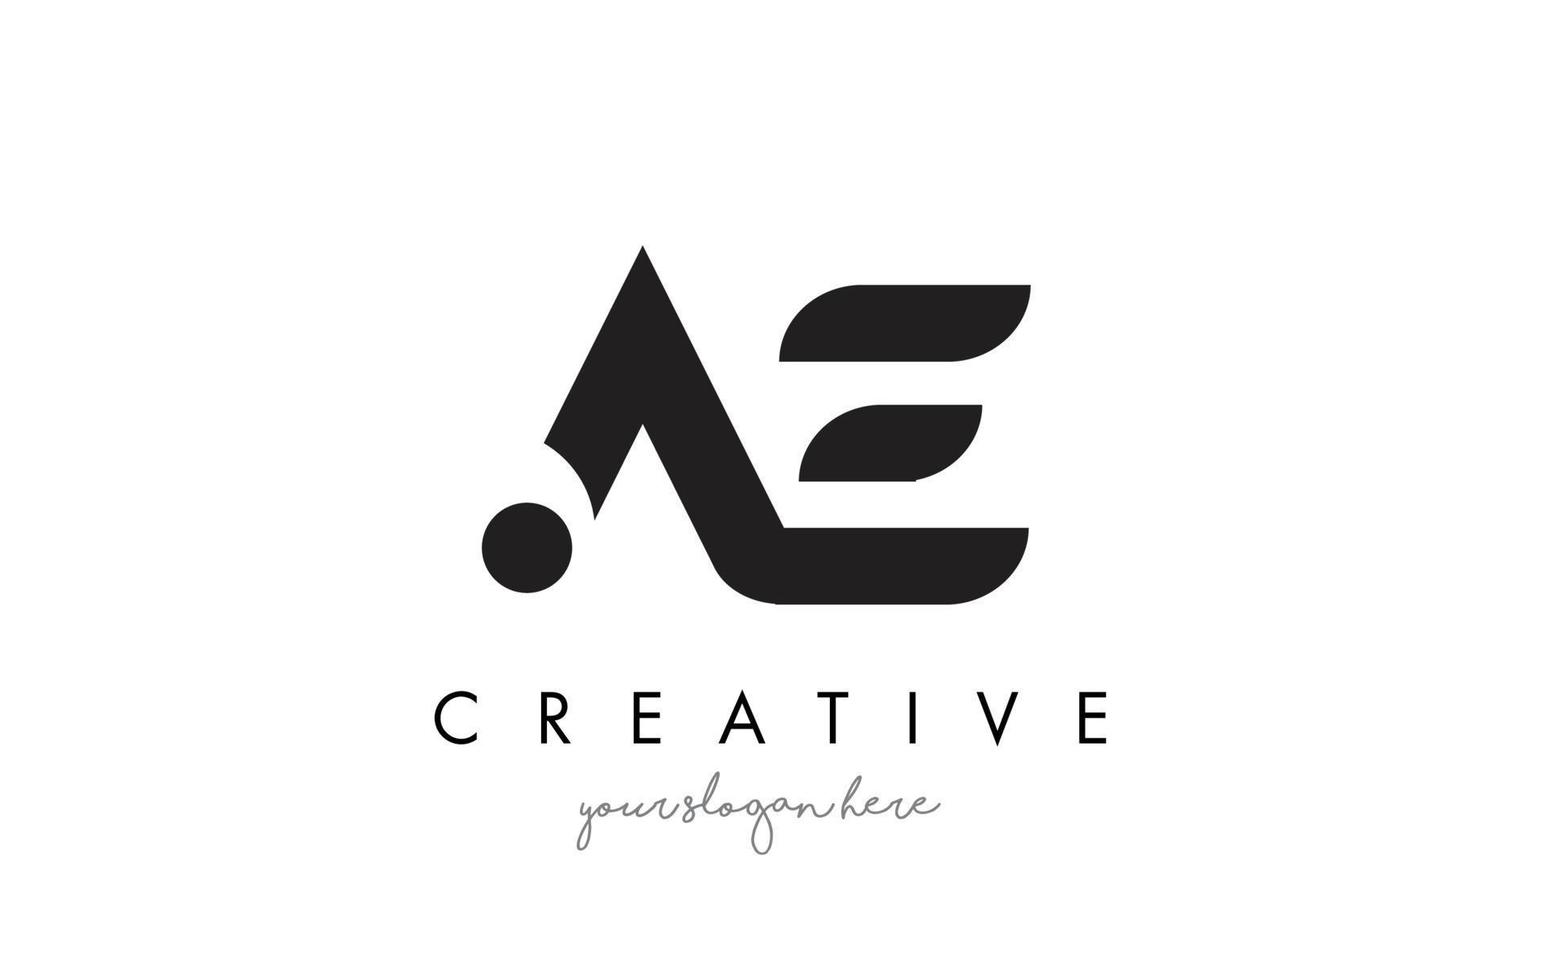 création de logo de lettre ae avec une typographie moderne et créative à la mode. vecteur